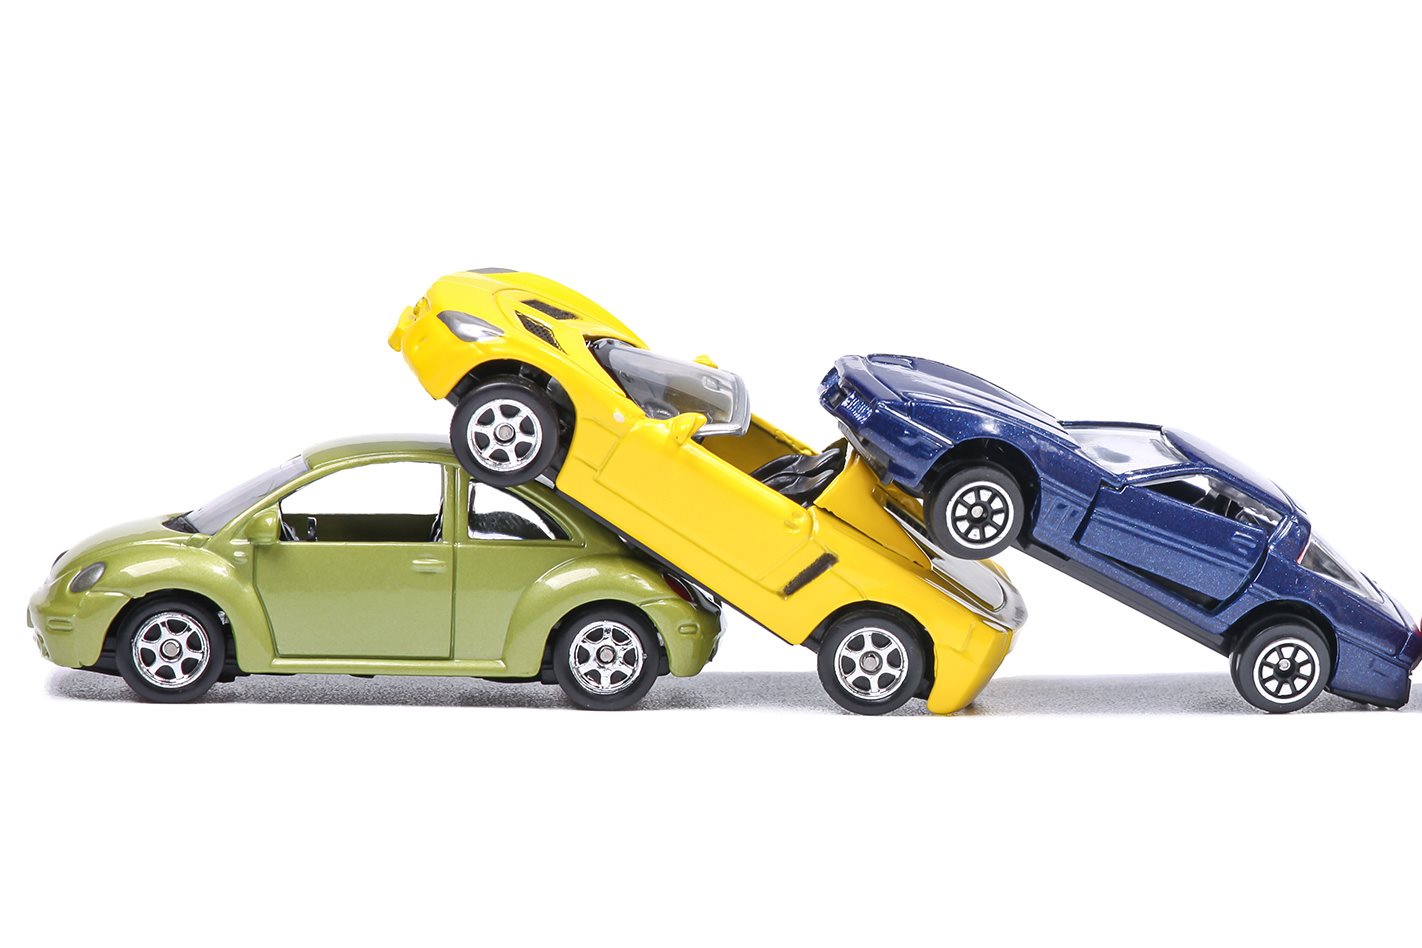 Cars part 6. Аварии игрушечных машинок. Toys игрушки car crash. Crash car игрушка. Игрушка синяя машина разбивается.